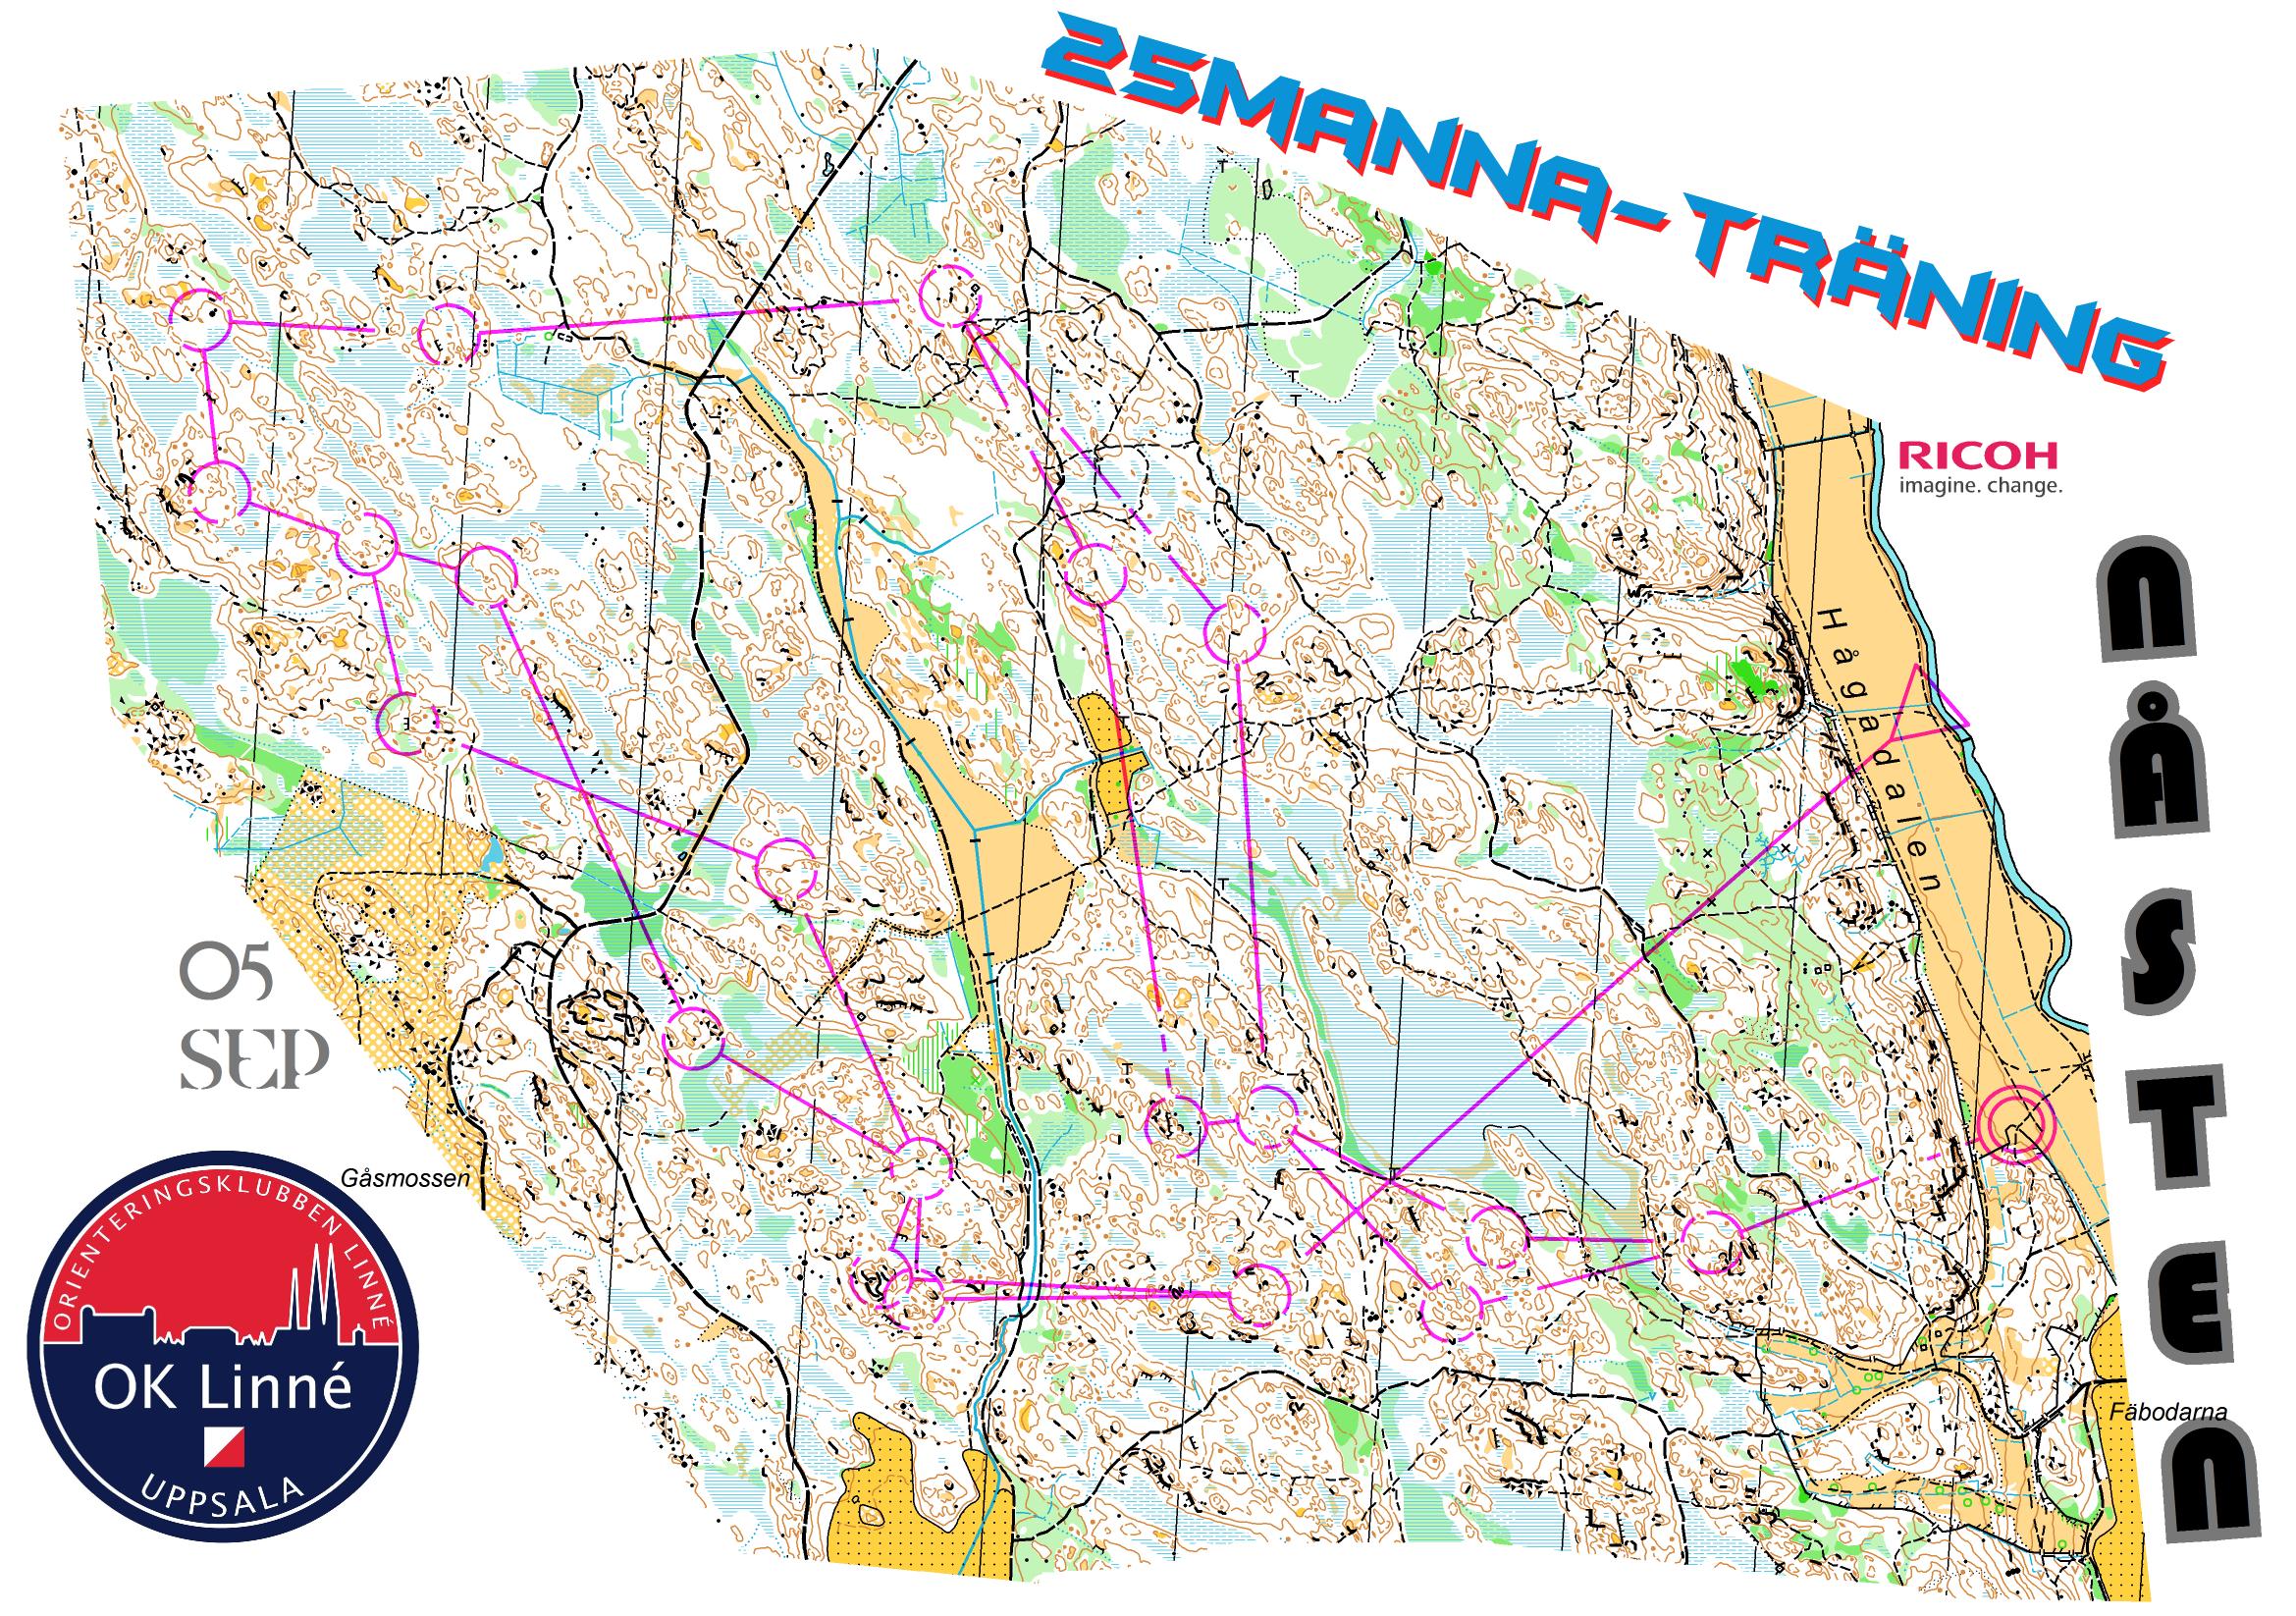 25manna-träning, Lång (05.09.2013)